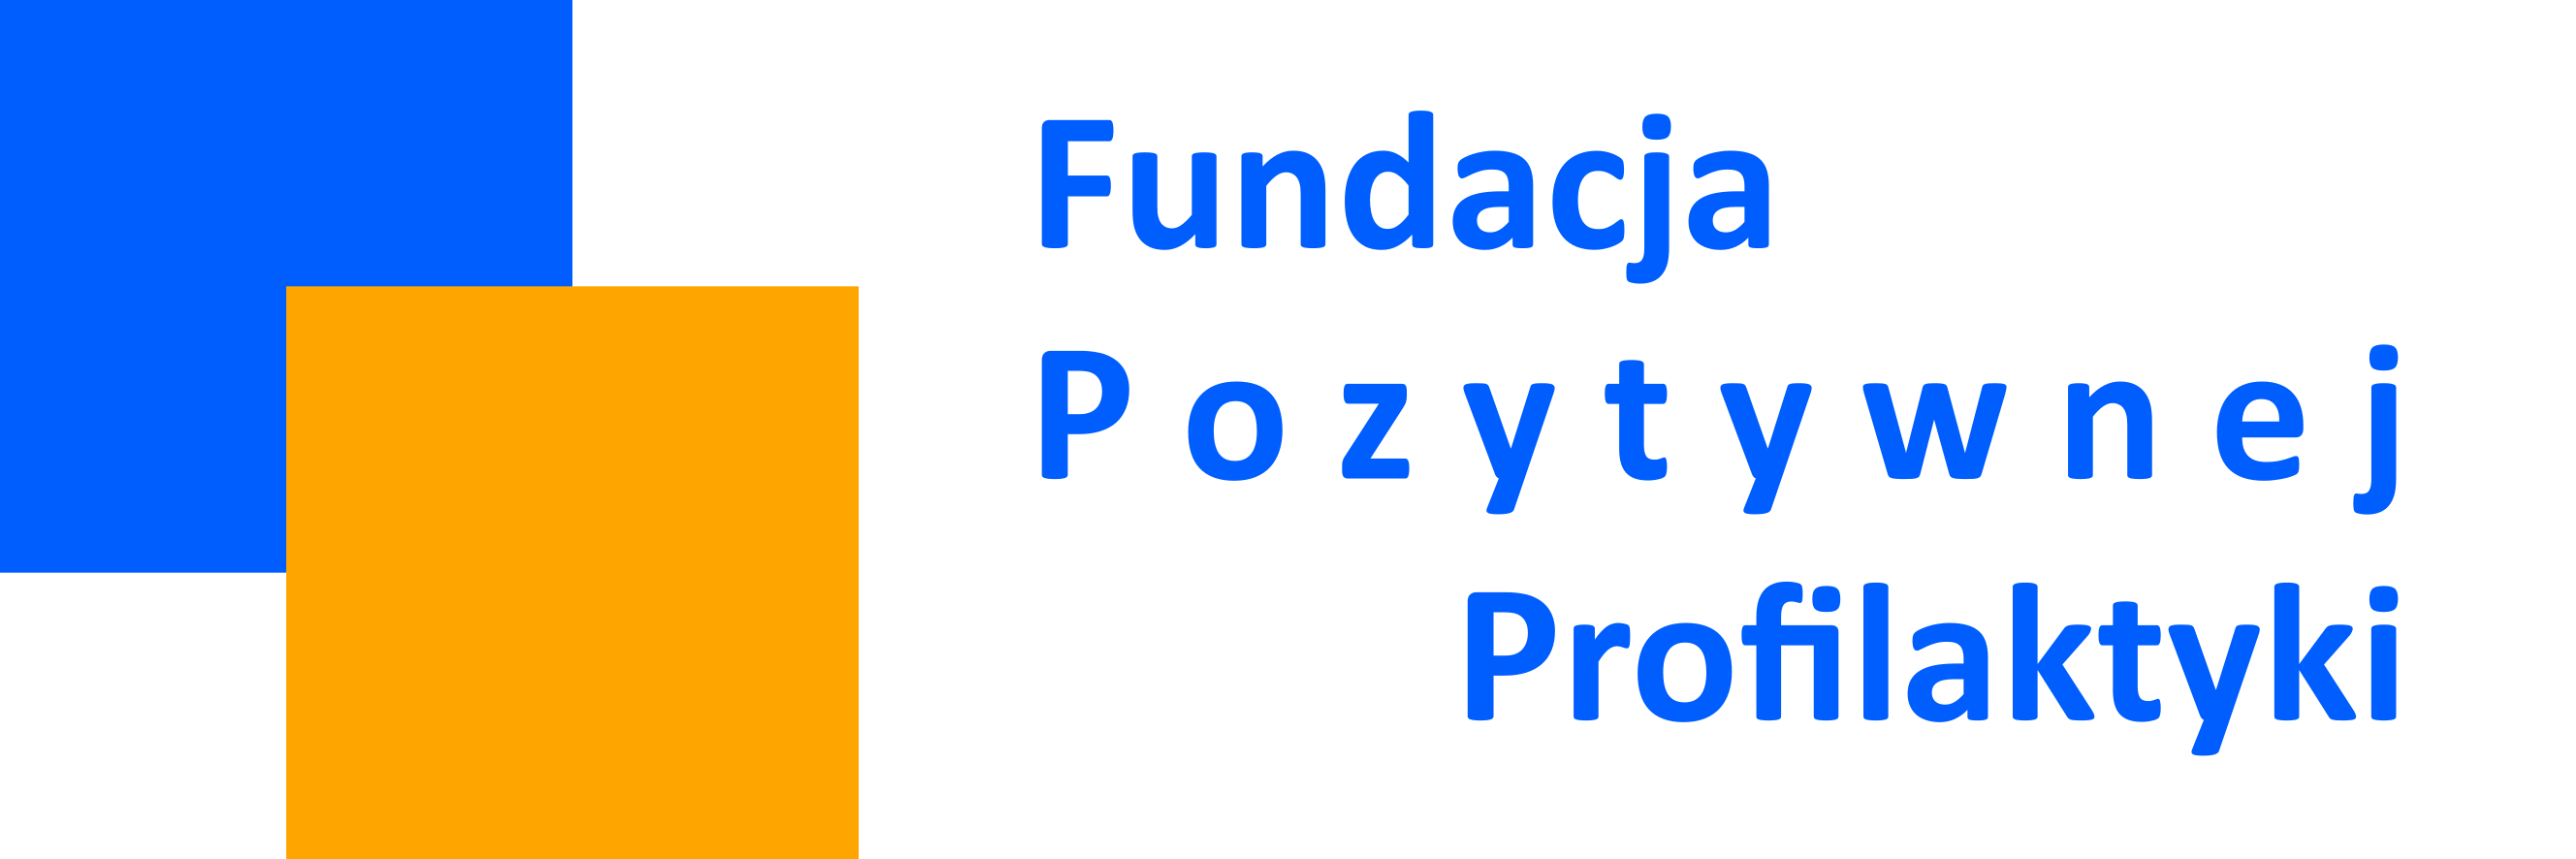 Fundacja Pozytywnej Profilaktyki